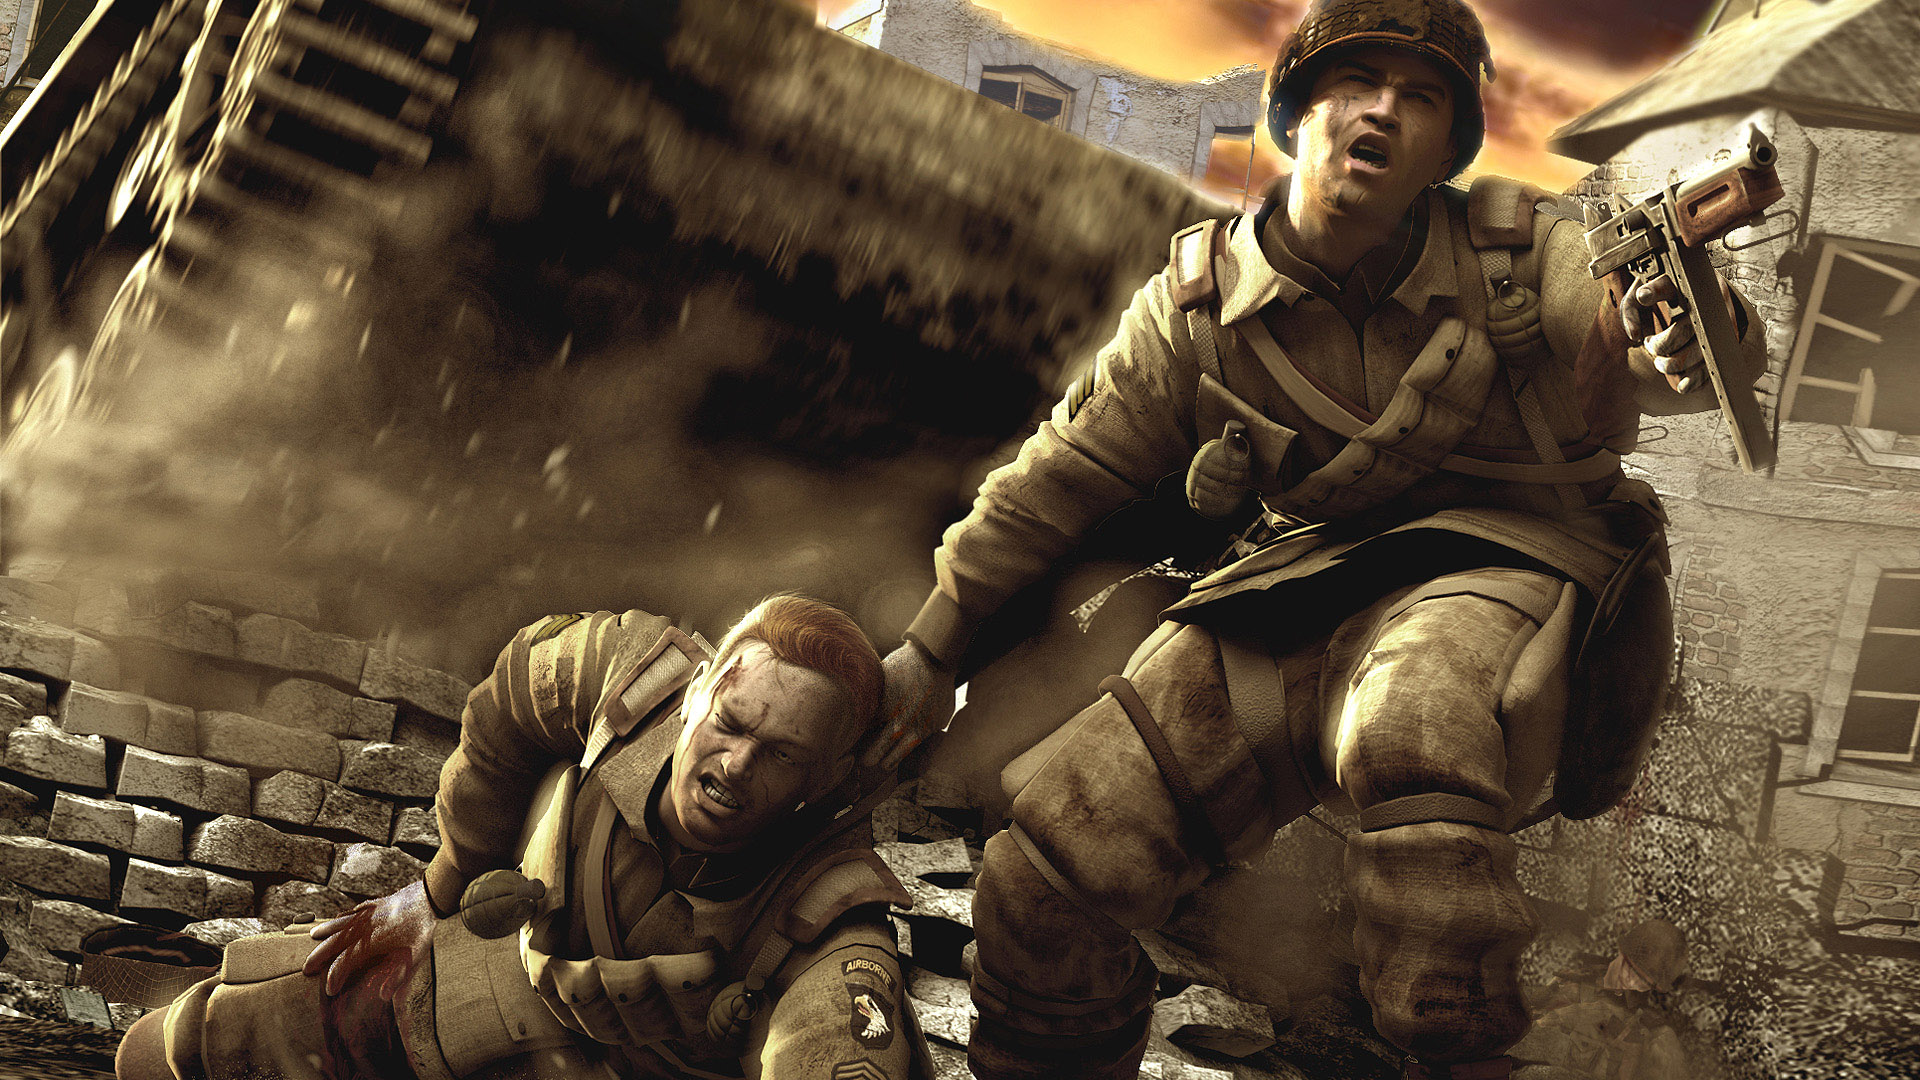 Cool Call of Duty World War Wallpaper Downlaod 911jpg